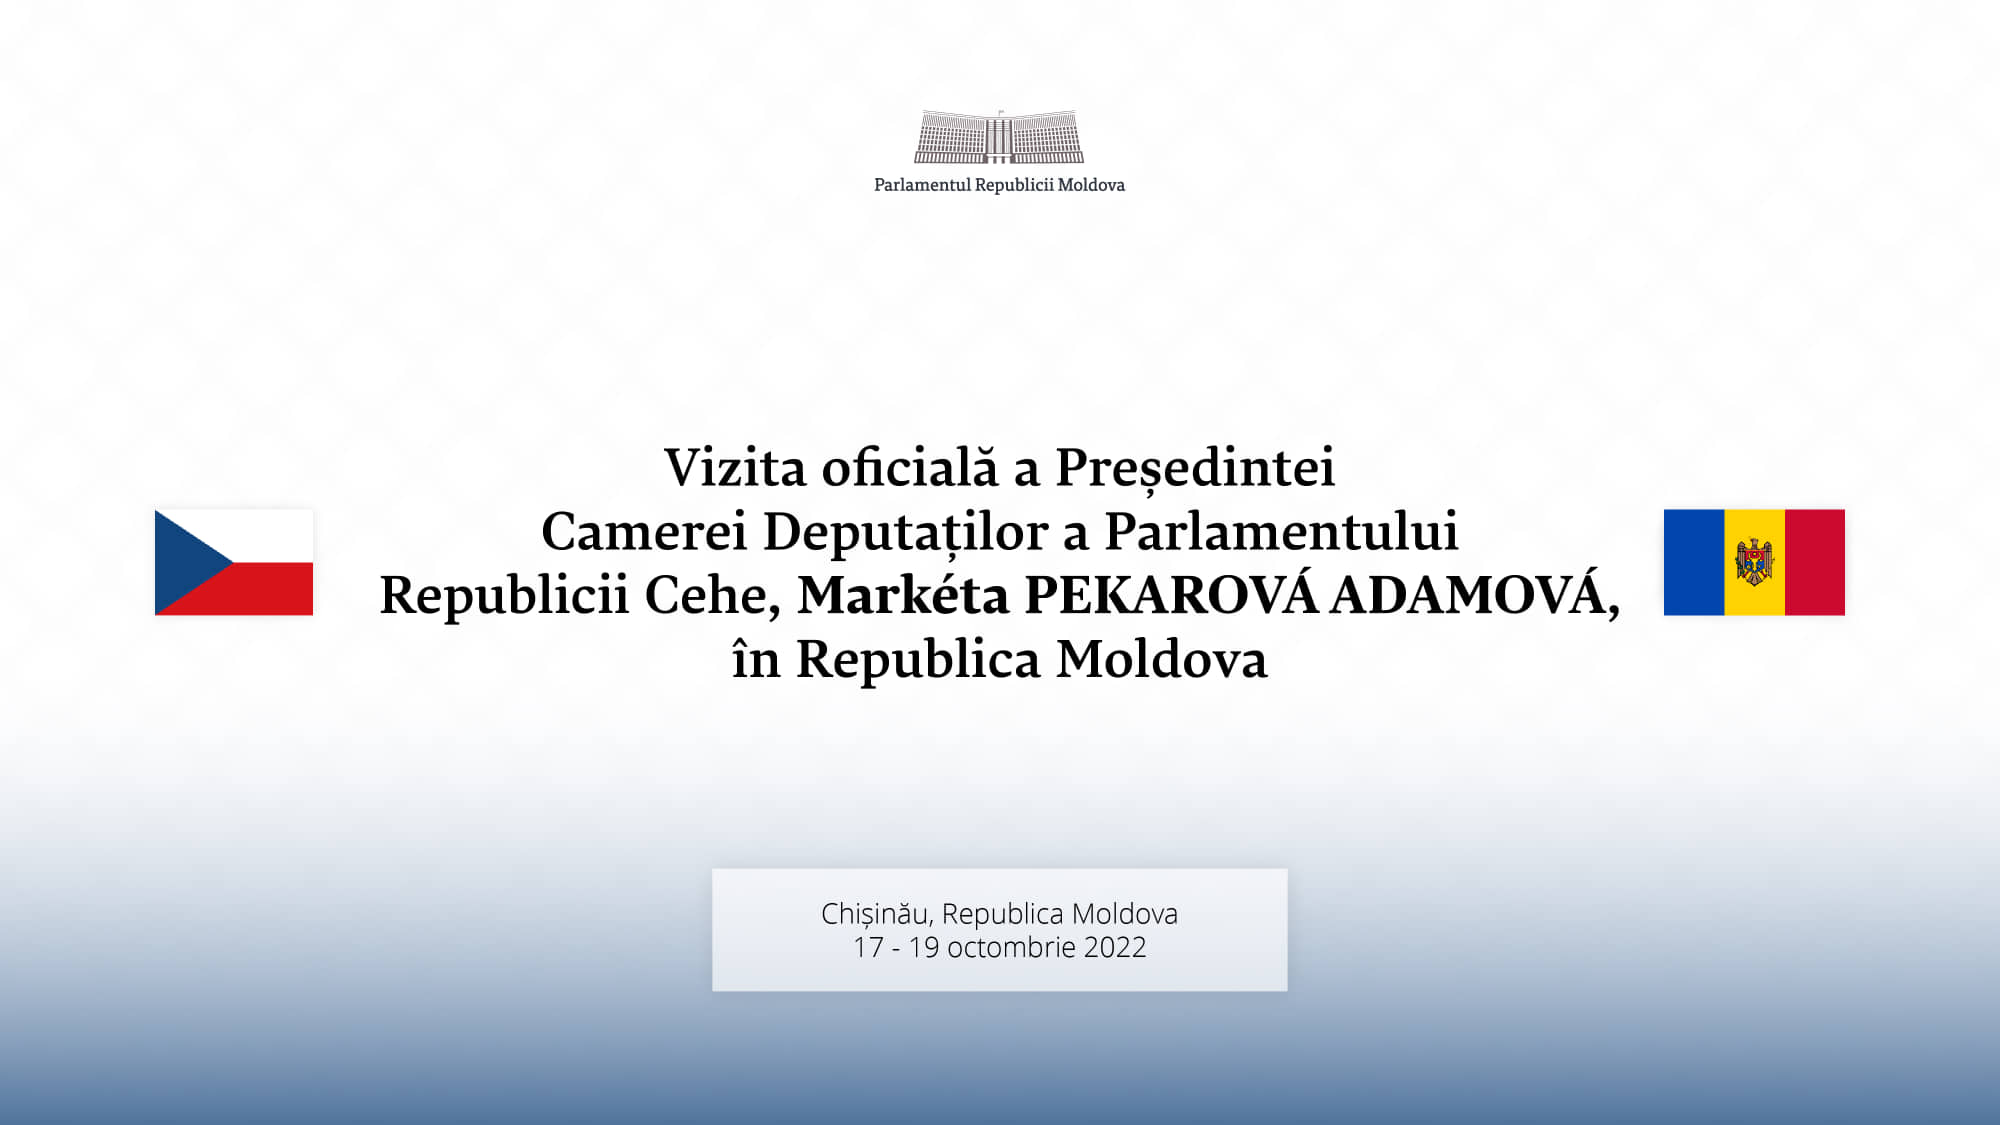 Președinta Camerei Deputaților a Cehiei va efectua o vizită oficială în țara noastră